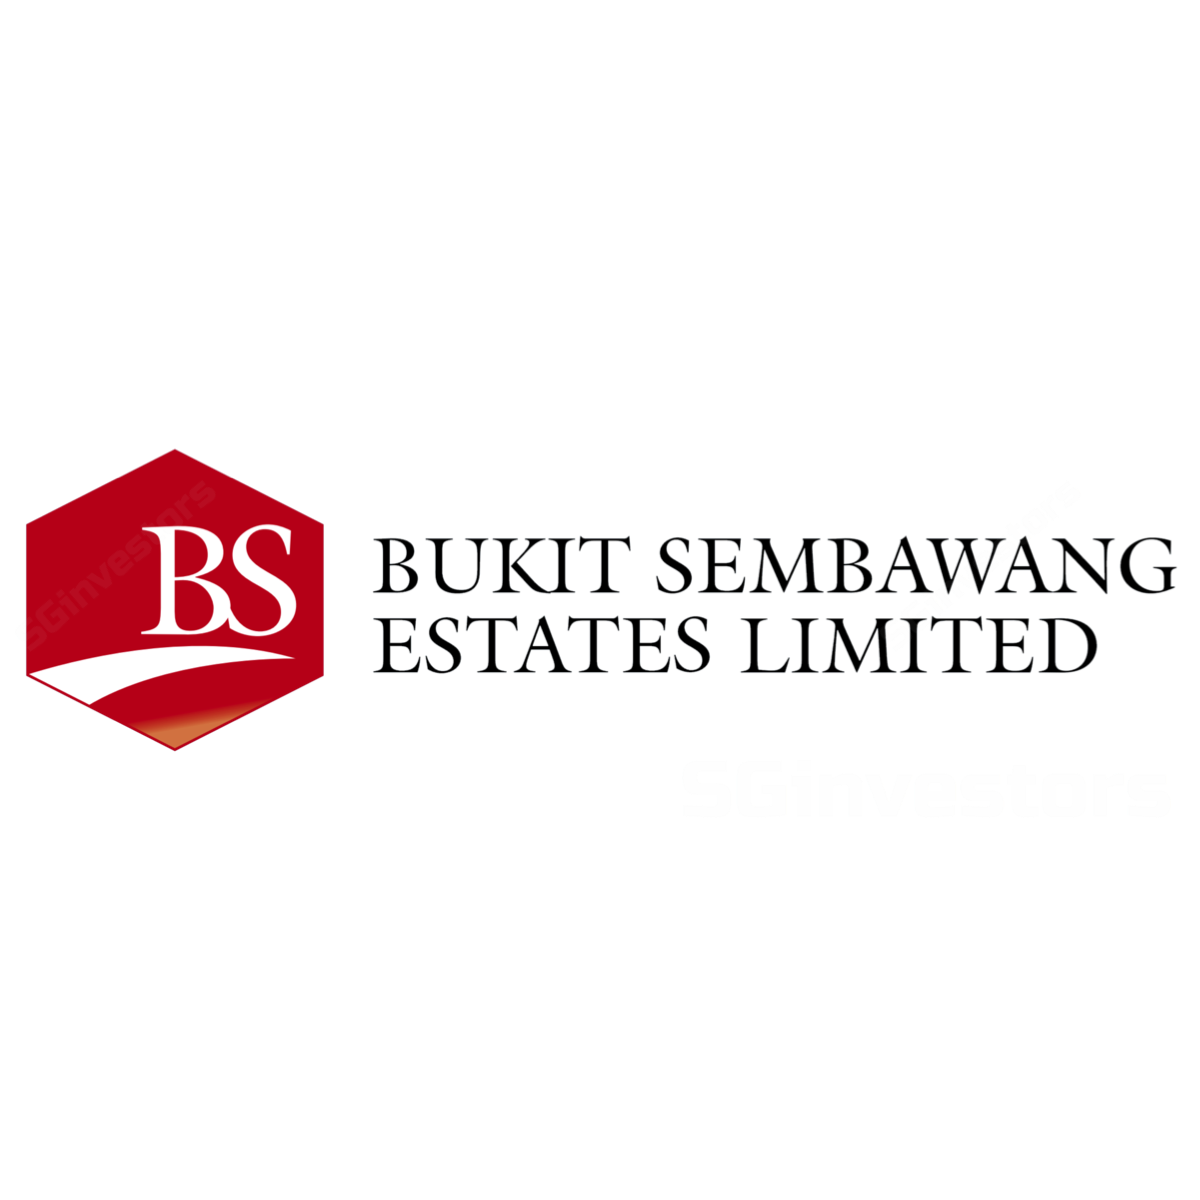 Singapore Property - DBS Vickers 2018-03-23: Bukit Sembawang Is Back With A BANG!